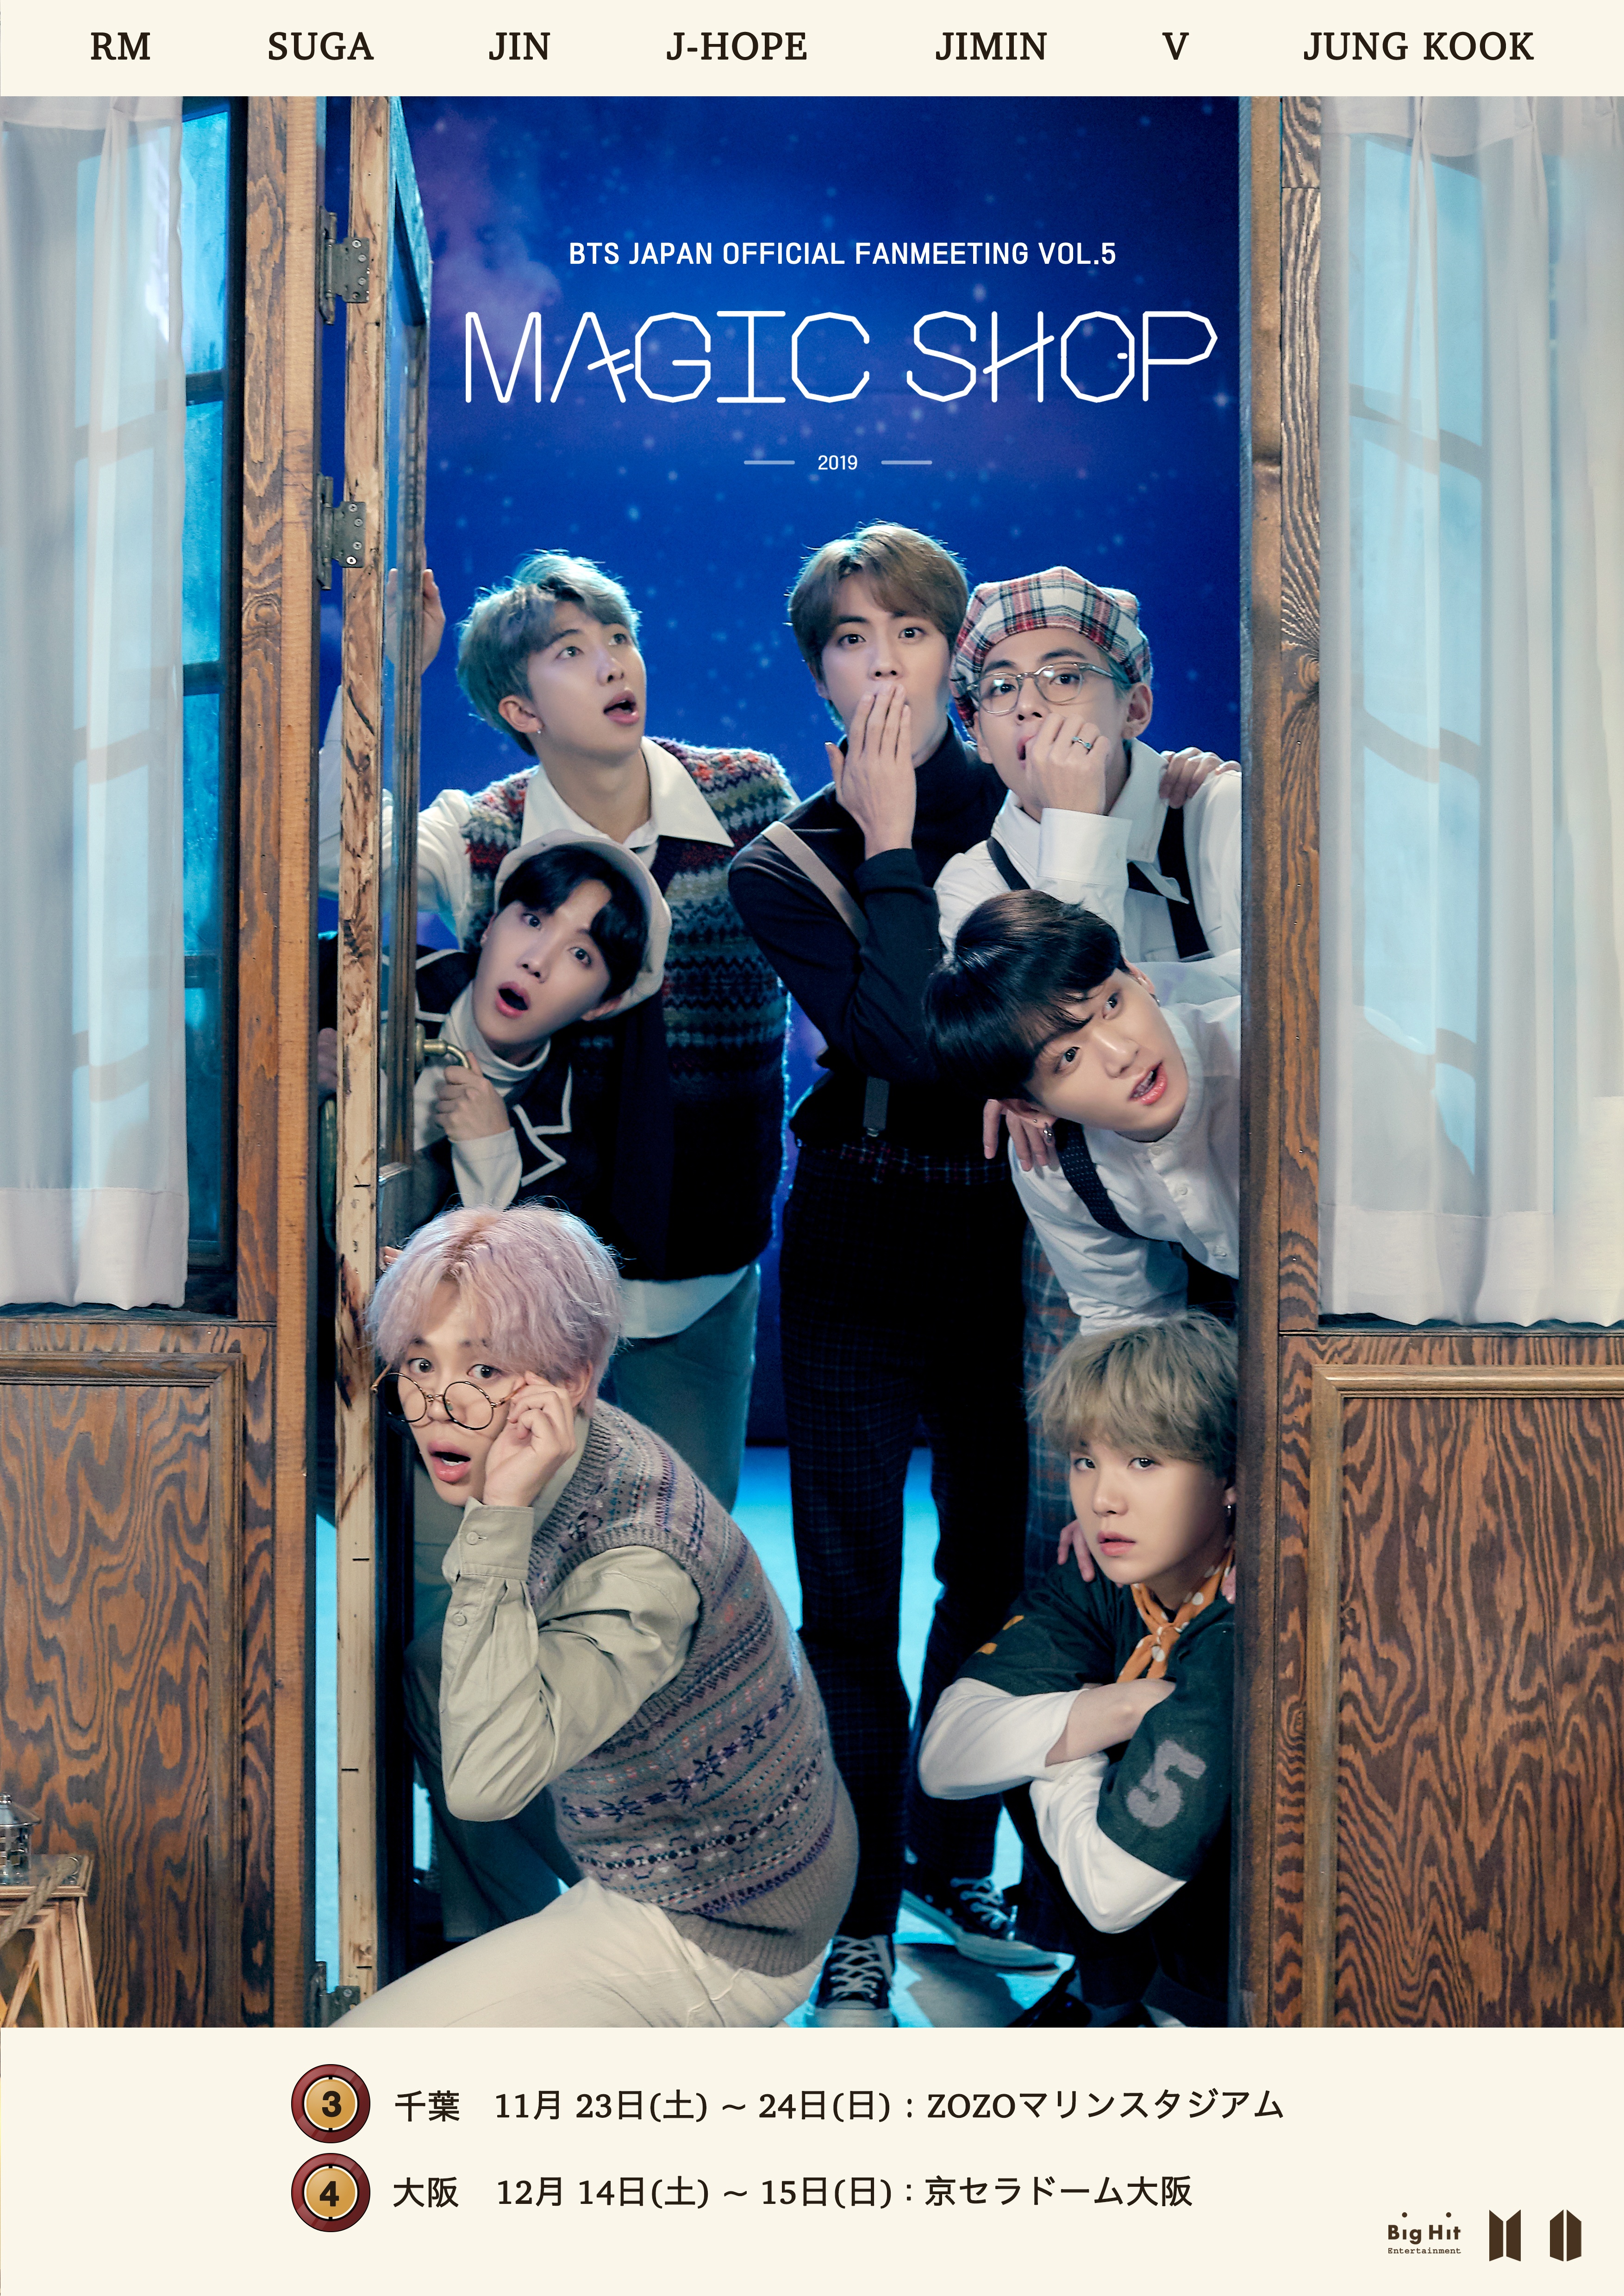 流行に MAGICSHOP 防弾少年団 BTS BTS - ペンミ MAGIC SHOP 防弾少年団 販売販売中 ファンミ DVD ペンミ 日本  SHOP DVD 日本公演 DVD